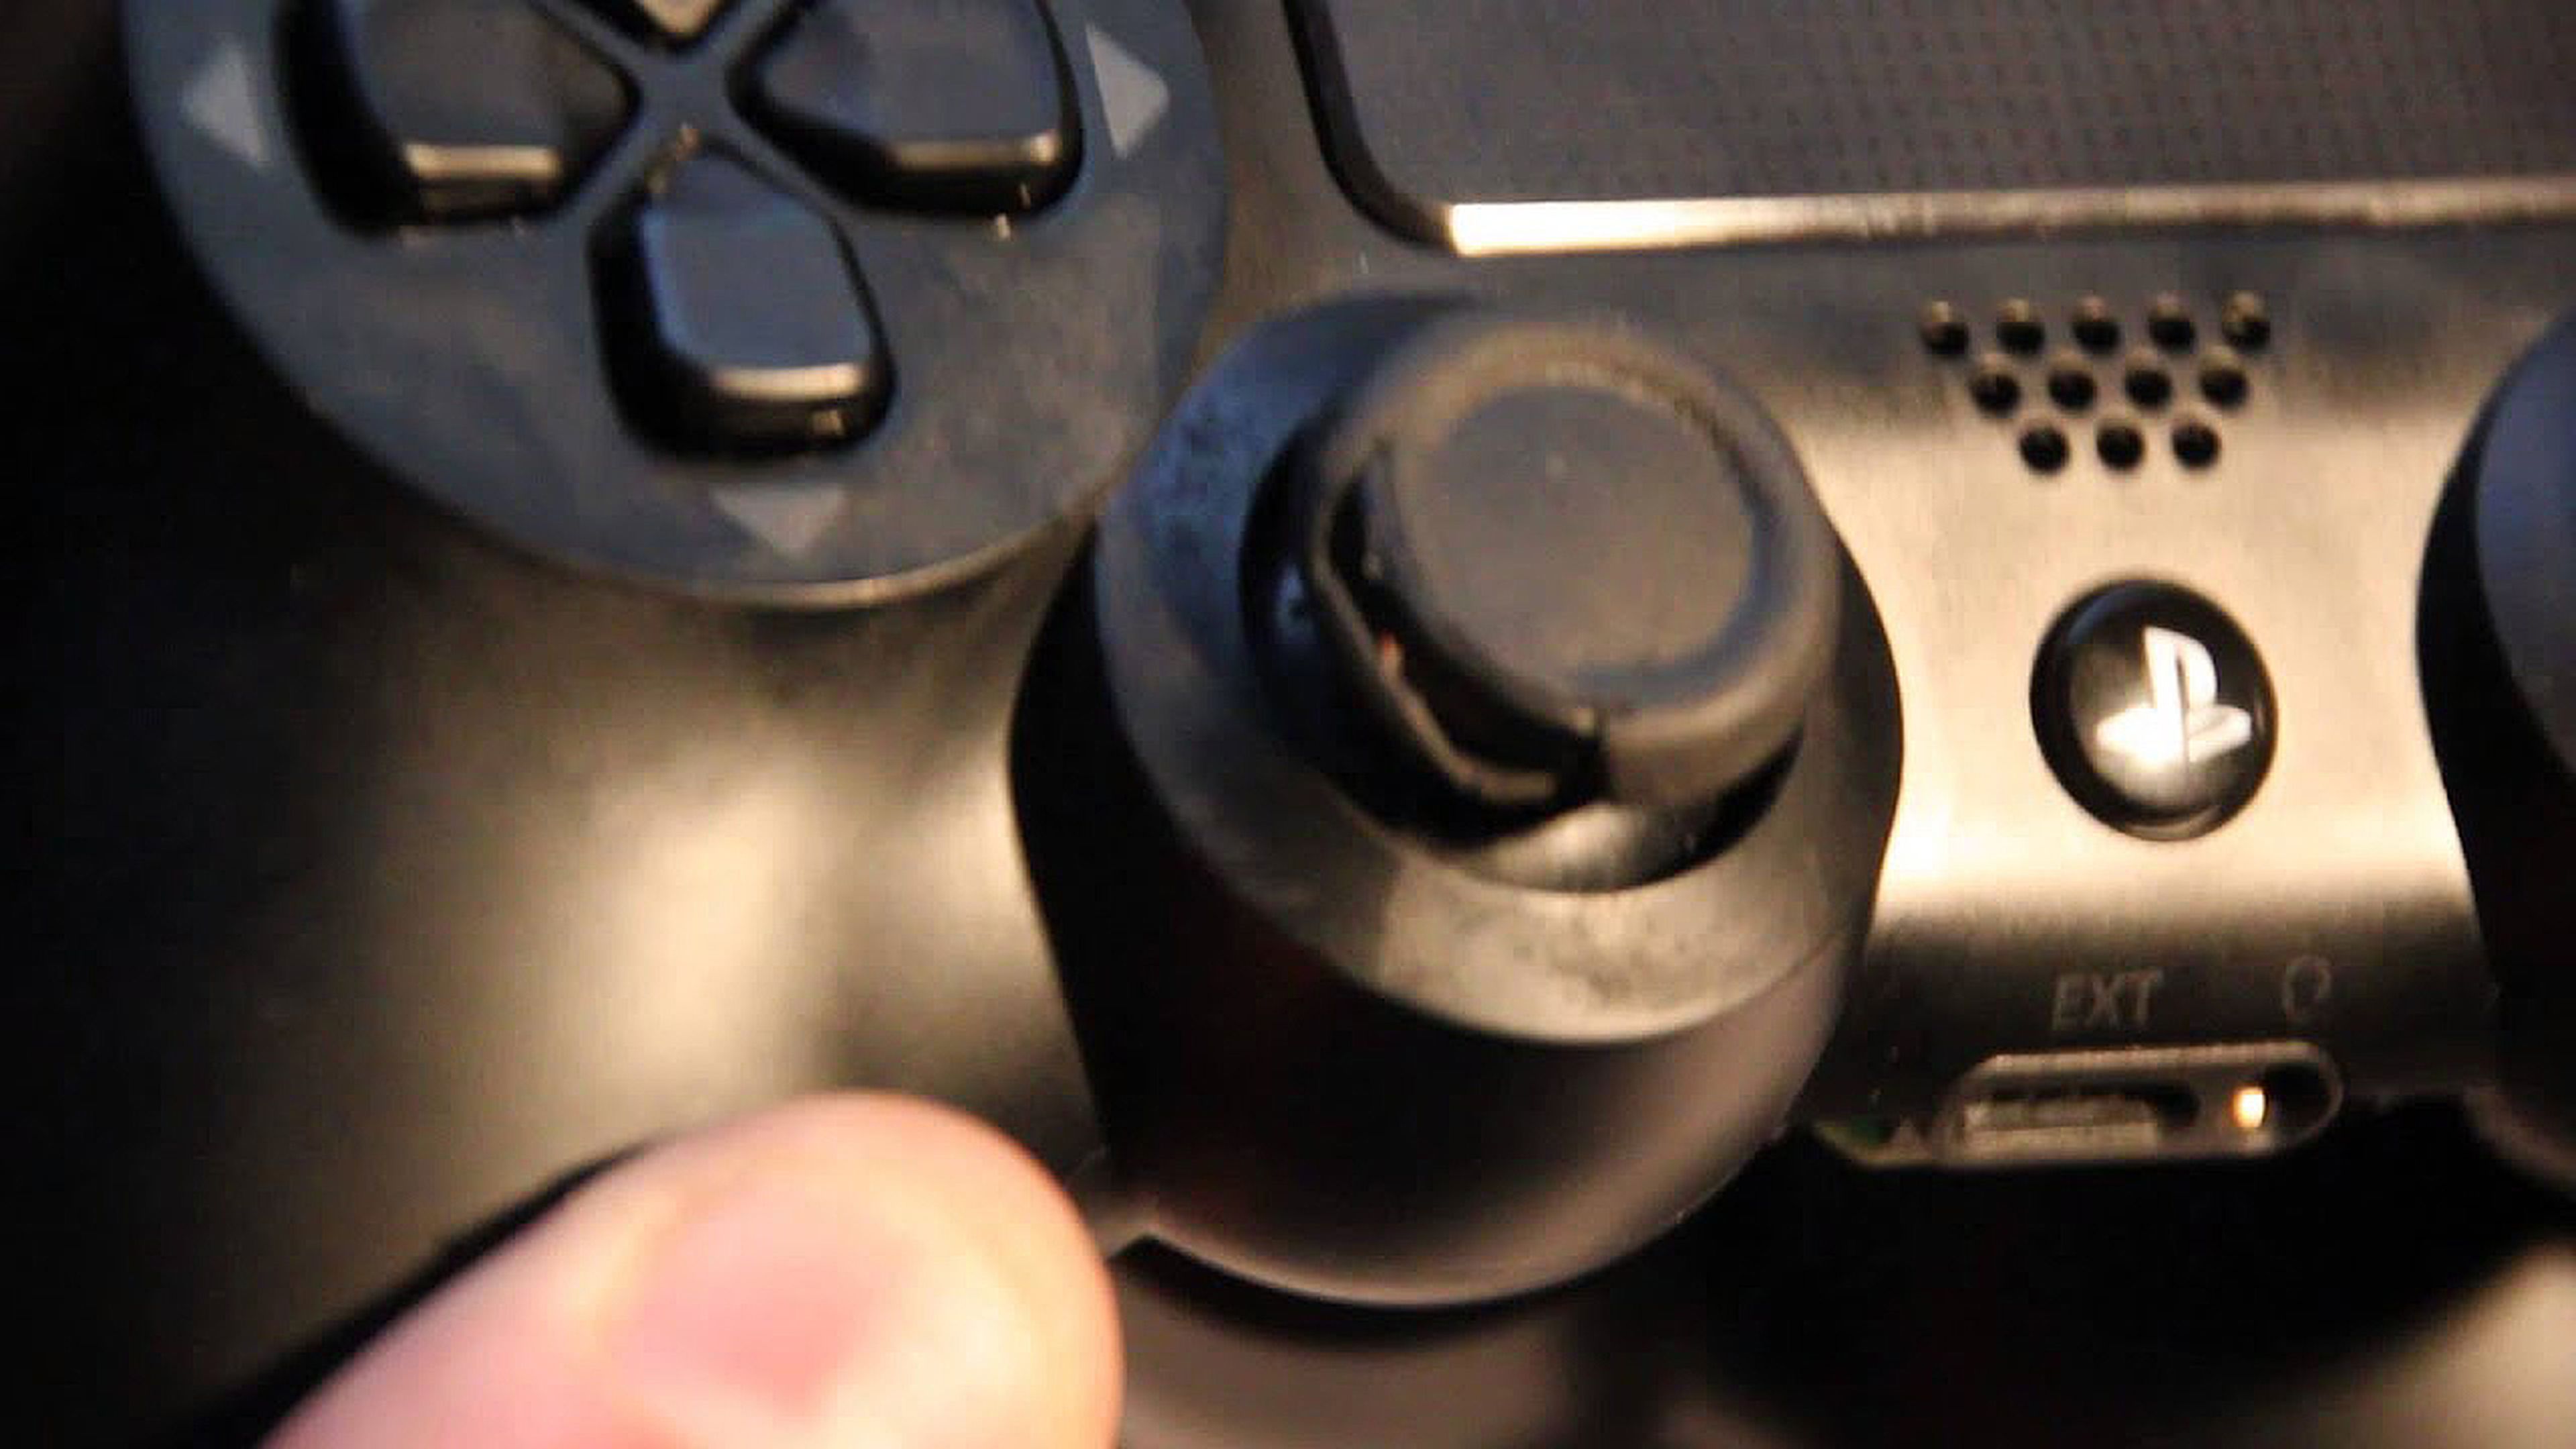 Los 10 fallos más comunes del mando de PS4 y cómo arreglarlos